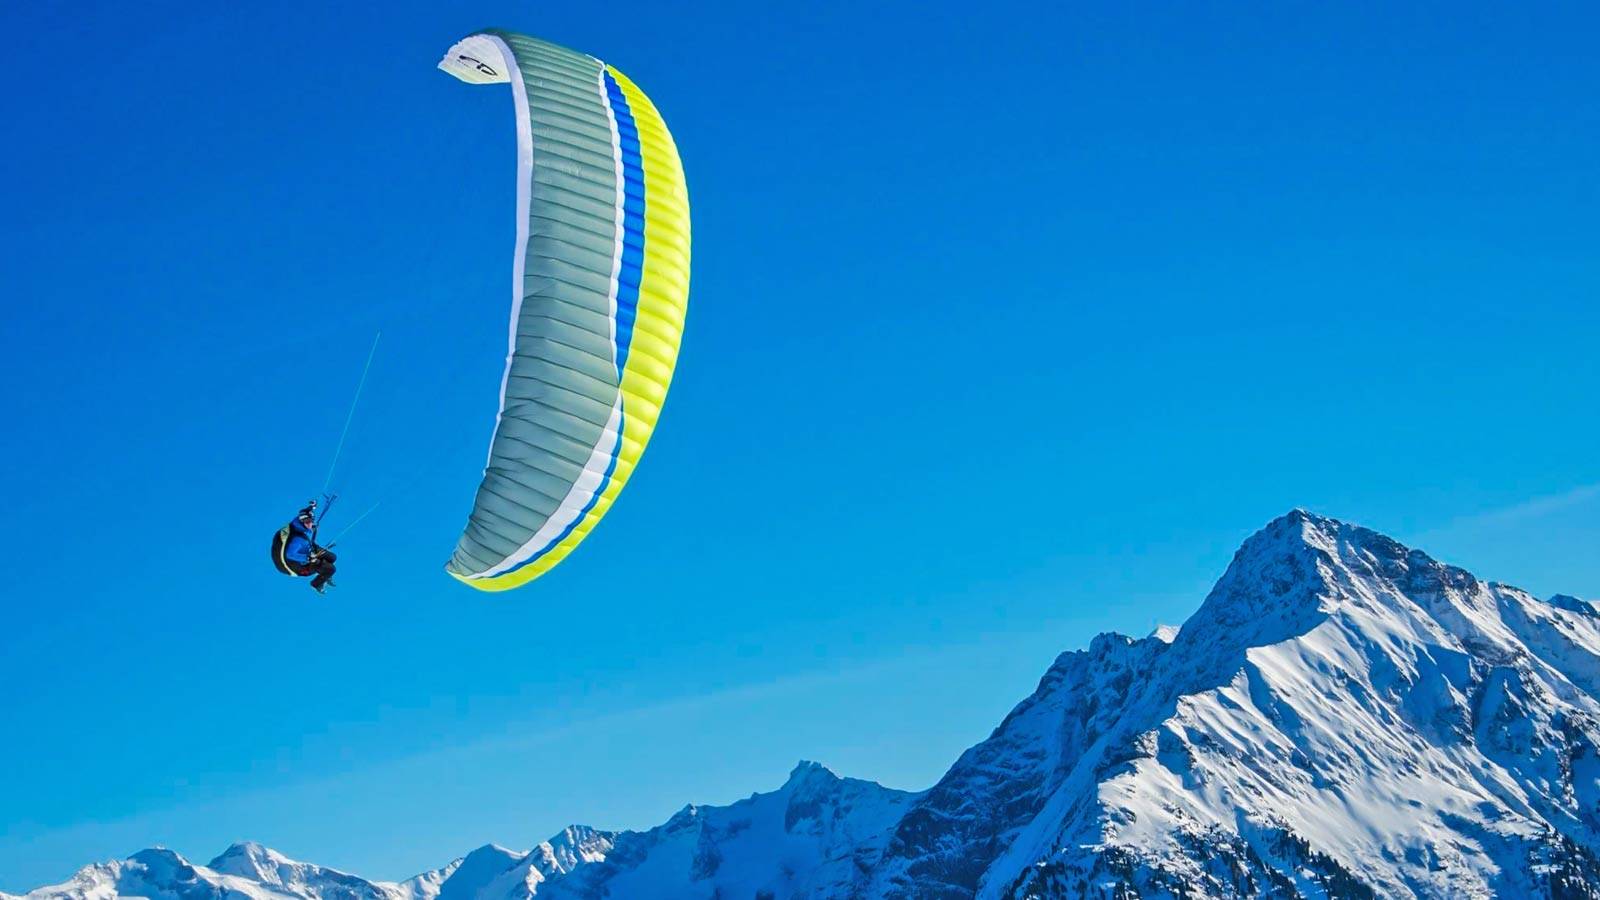 Flugtechniktraining für Paragleiter in Tirol